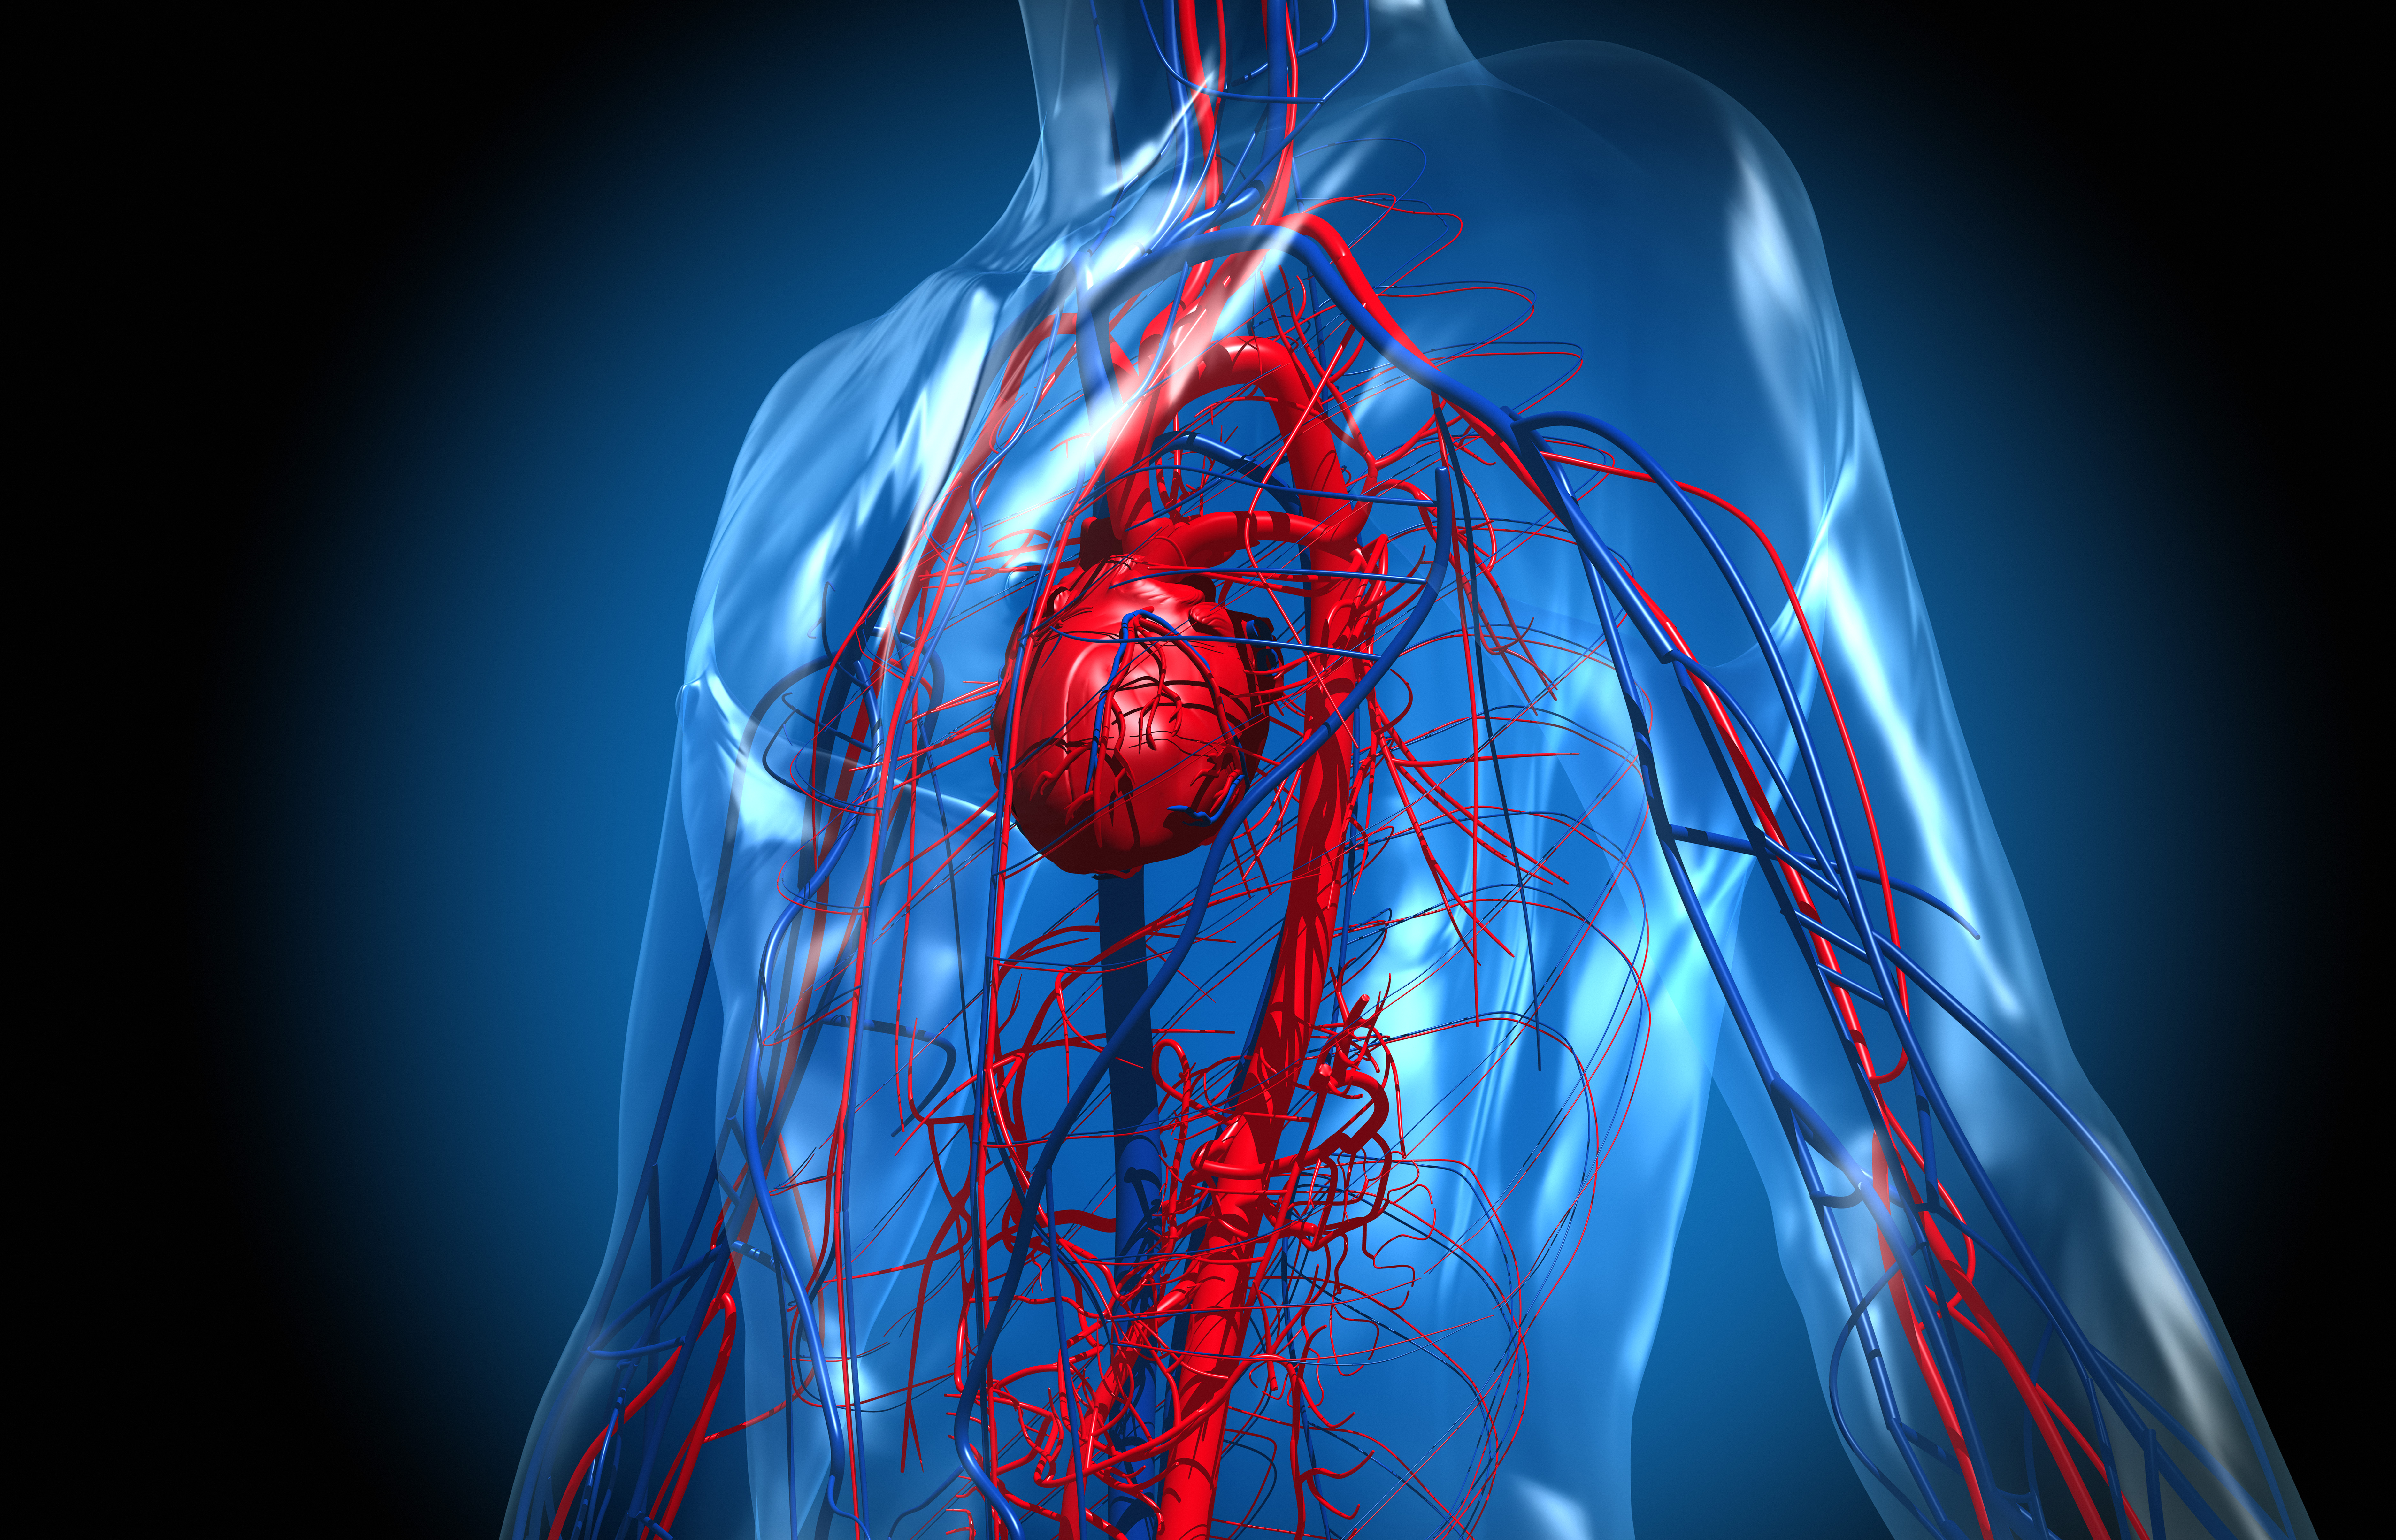 La conexión entre el corazón y el cerebro explica, en muchos pacientes, el origen de miocardiopatías luego de circunstancias estresantes (Getty)